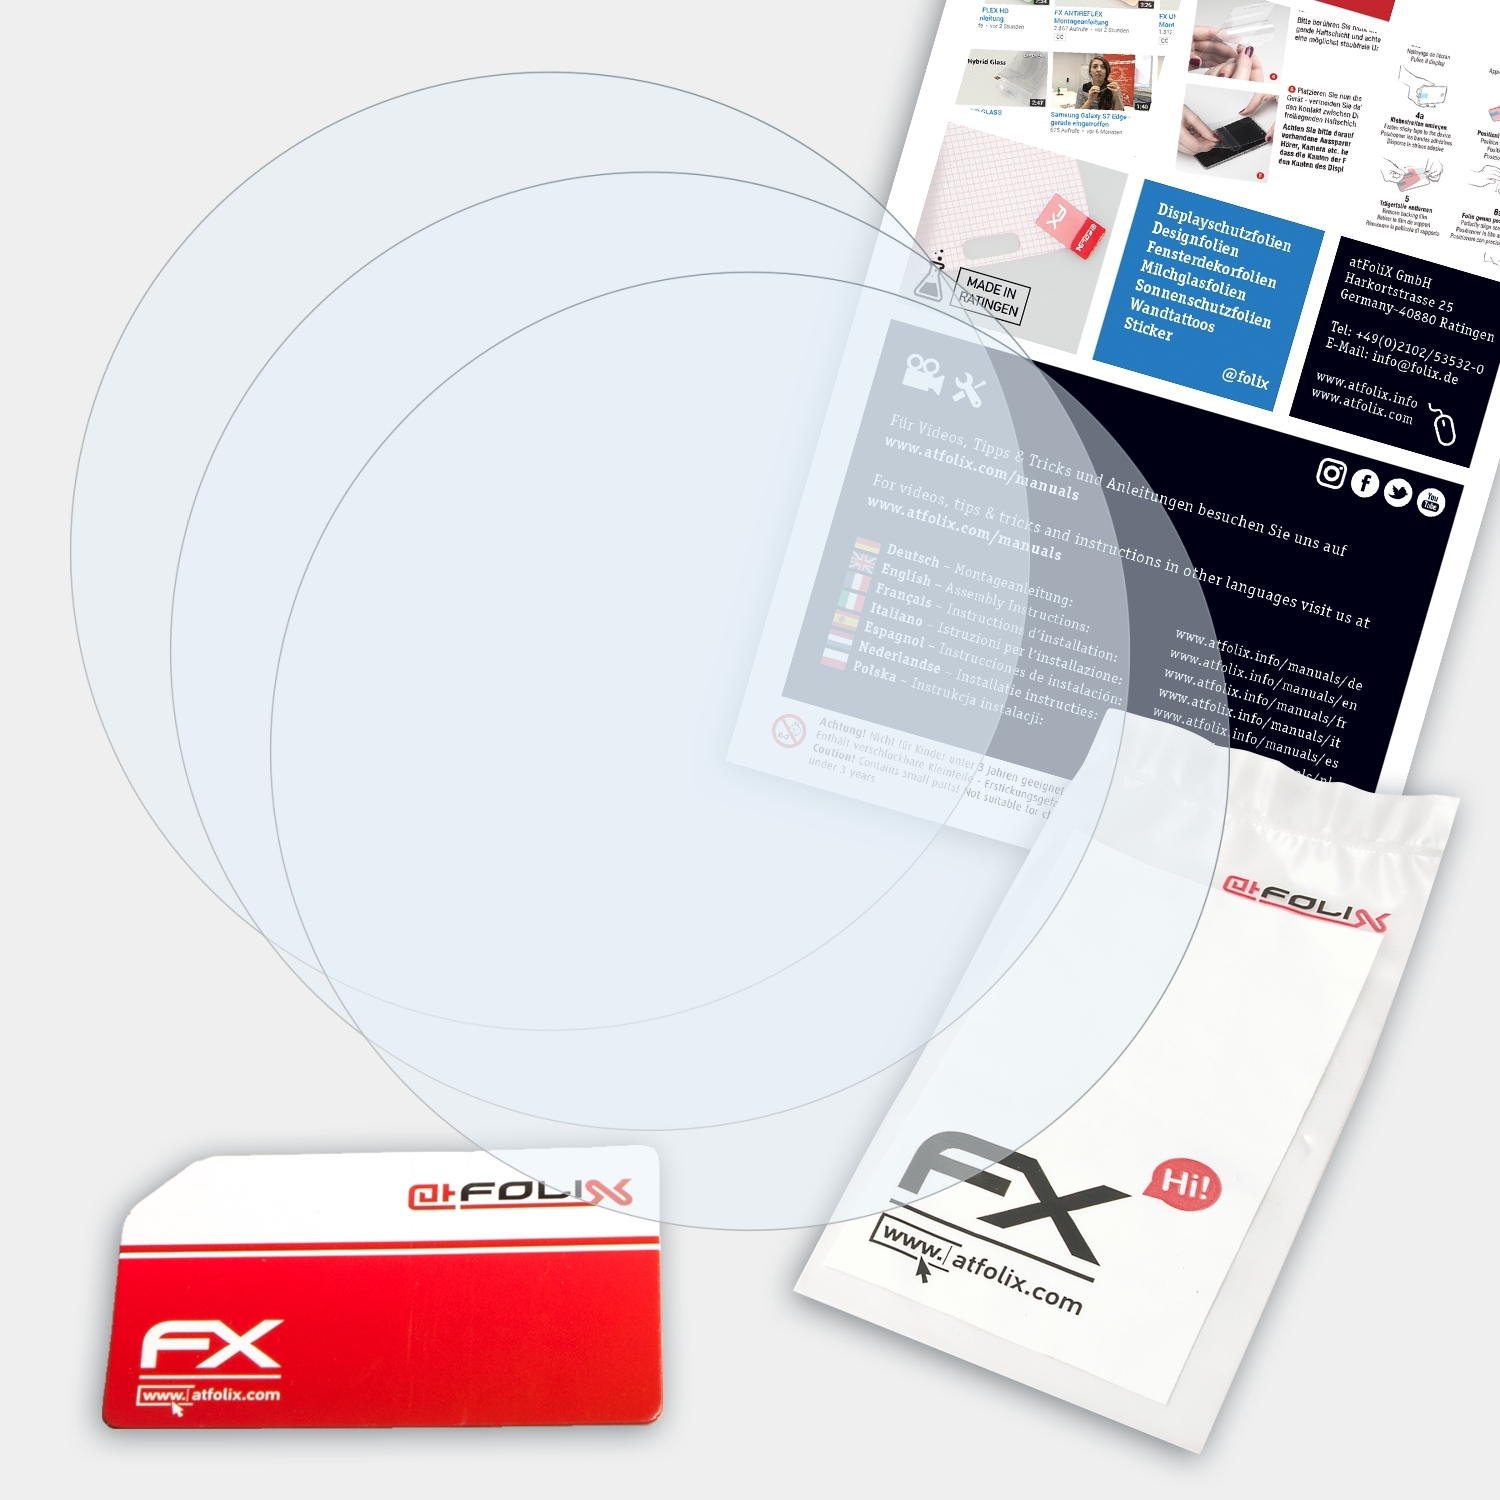 ATFOLIX 3x FX-Clear Displayschutz(für 45) Garmin Forerunner